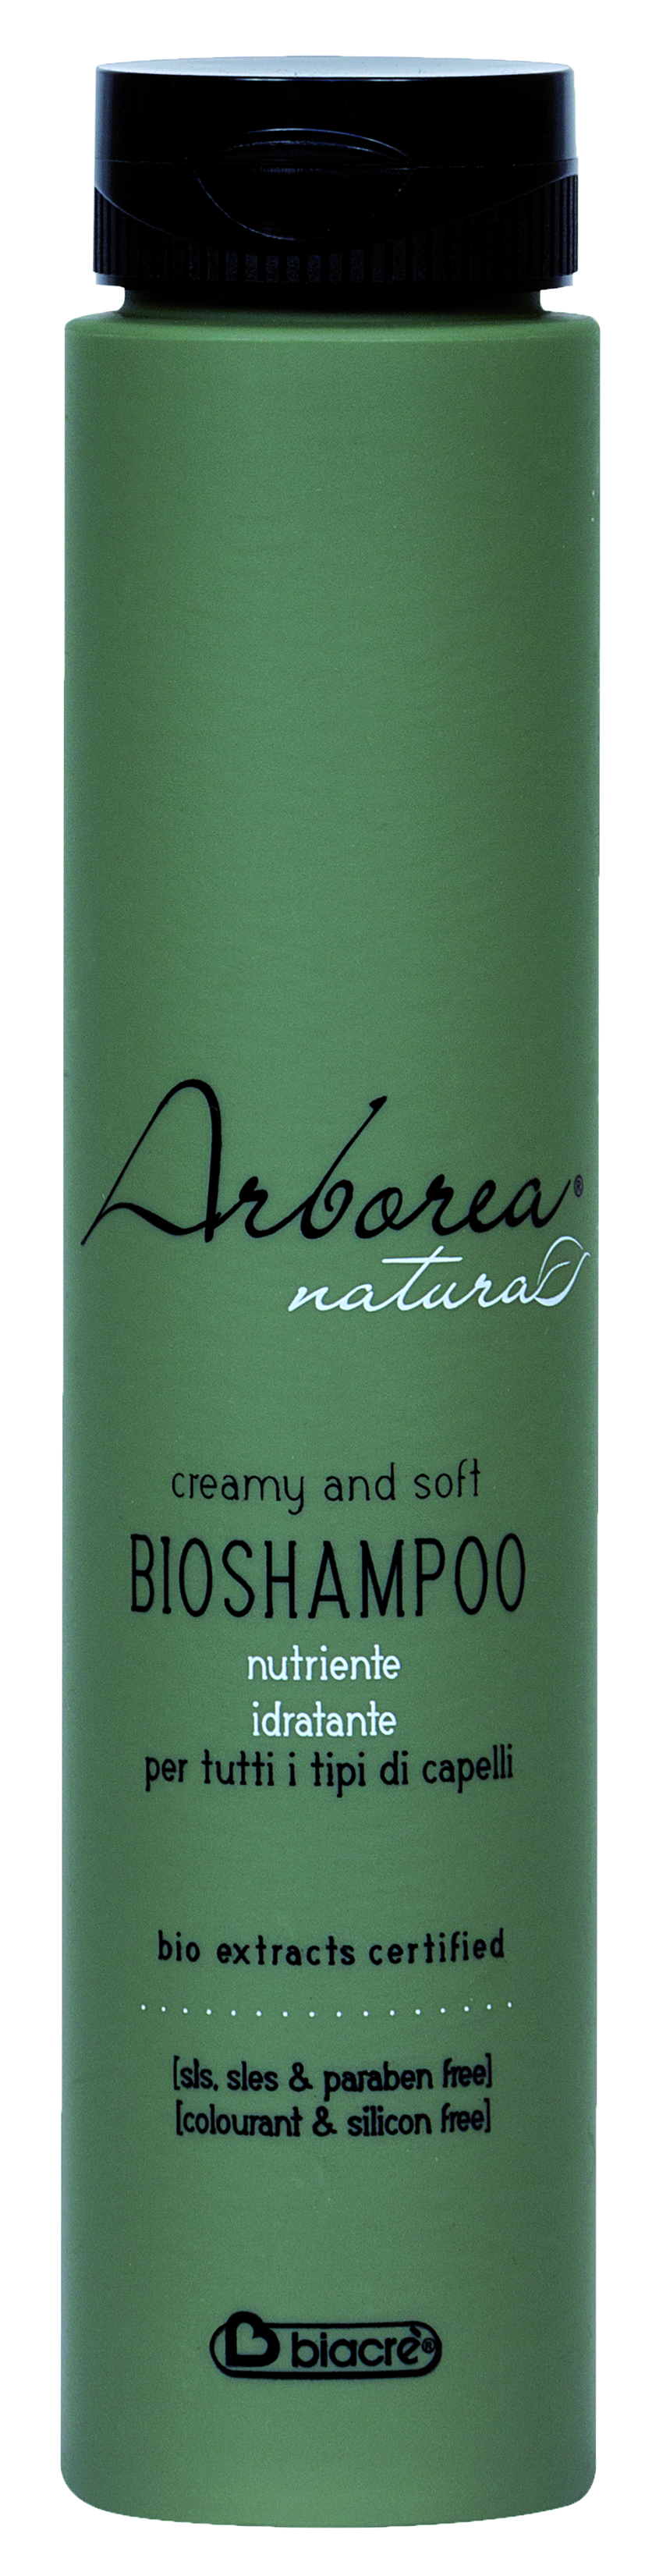 Arborea Bio-Shampoo